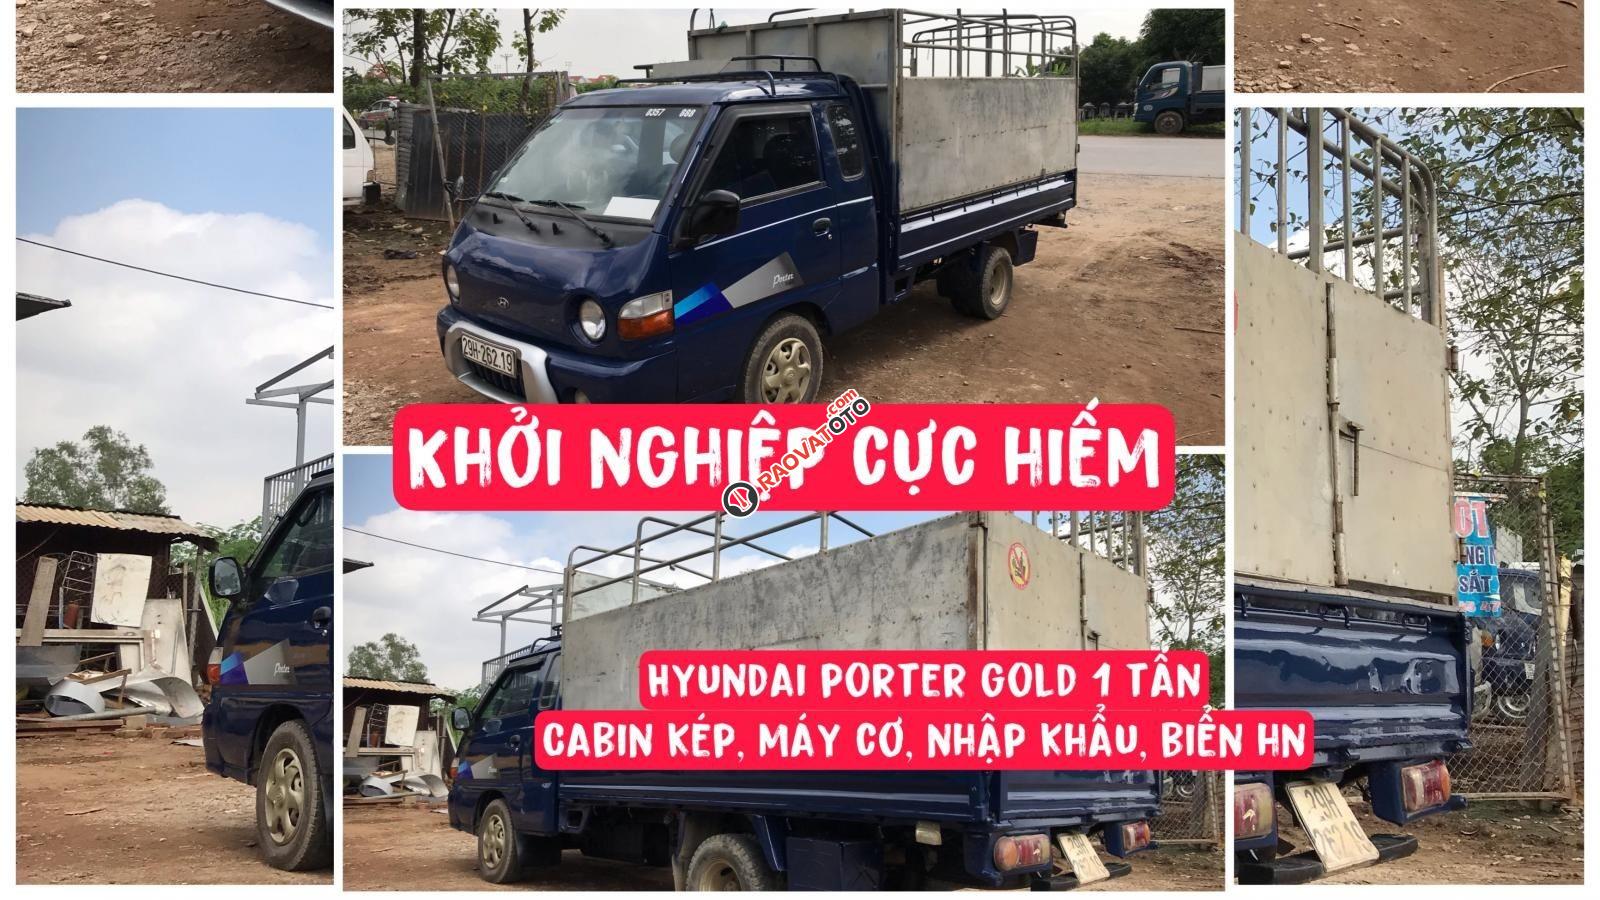 Hiếm Hyundai Porter Gold nhập khẩu 1 tấn Cabin kép Máy cơ biển Hà Nội-0